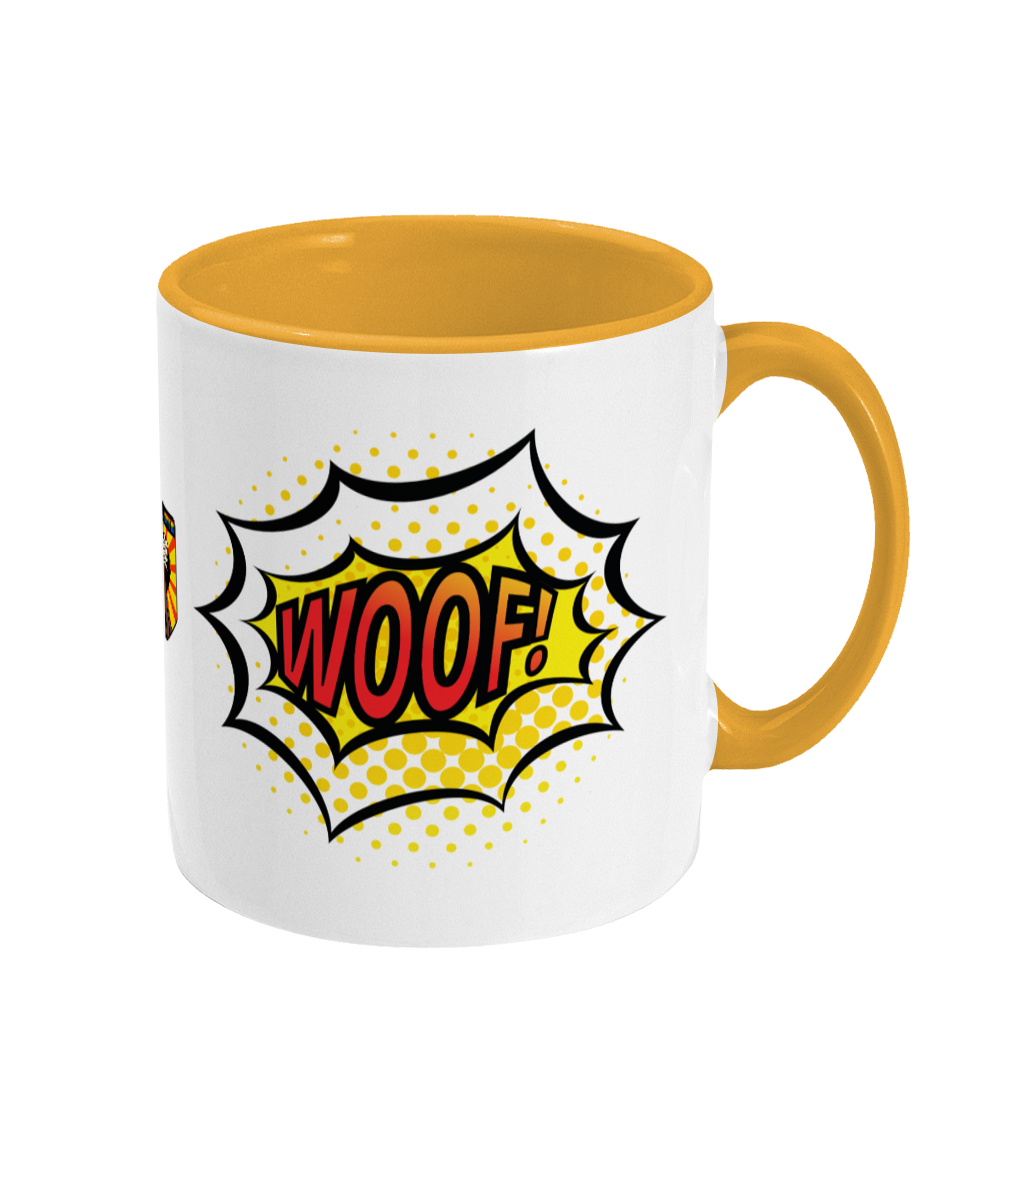 Two Toned Woof! Mug